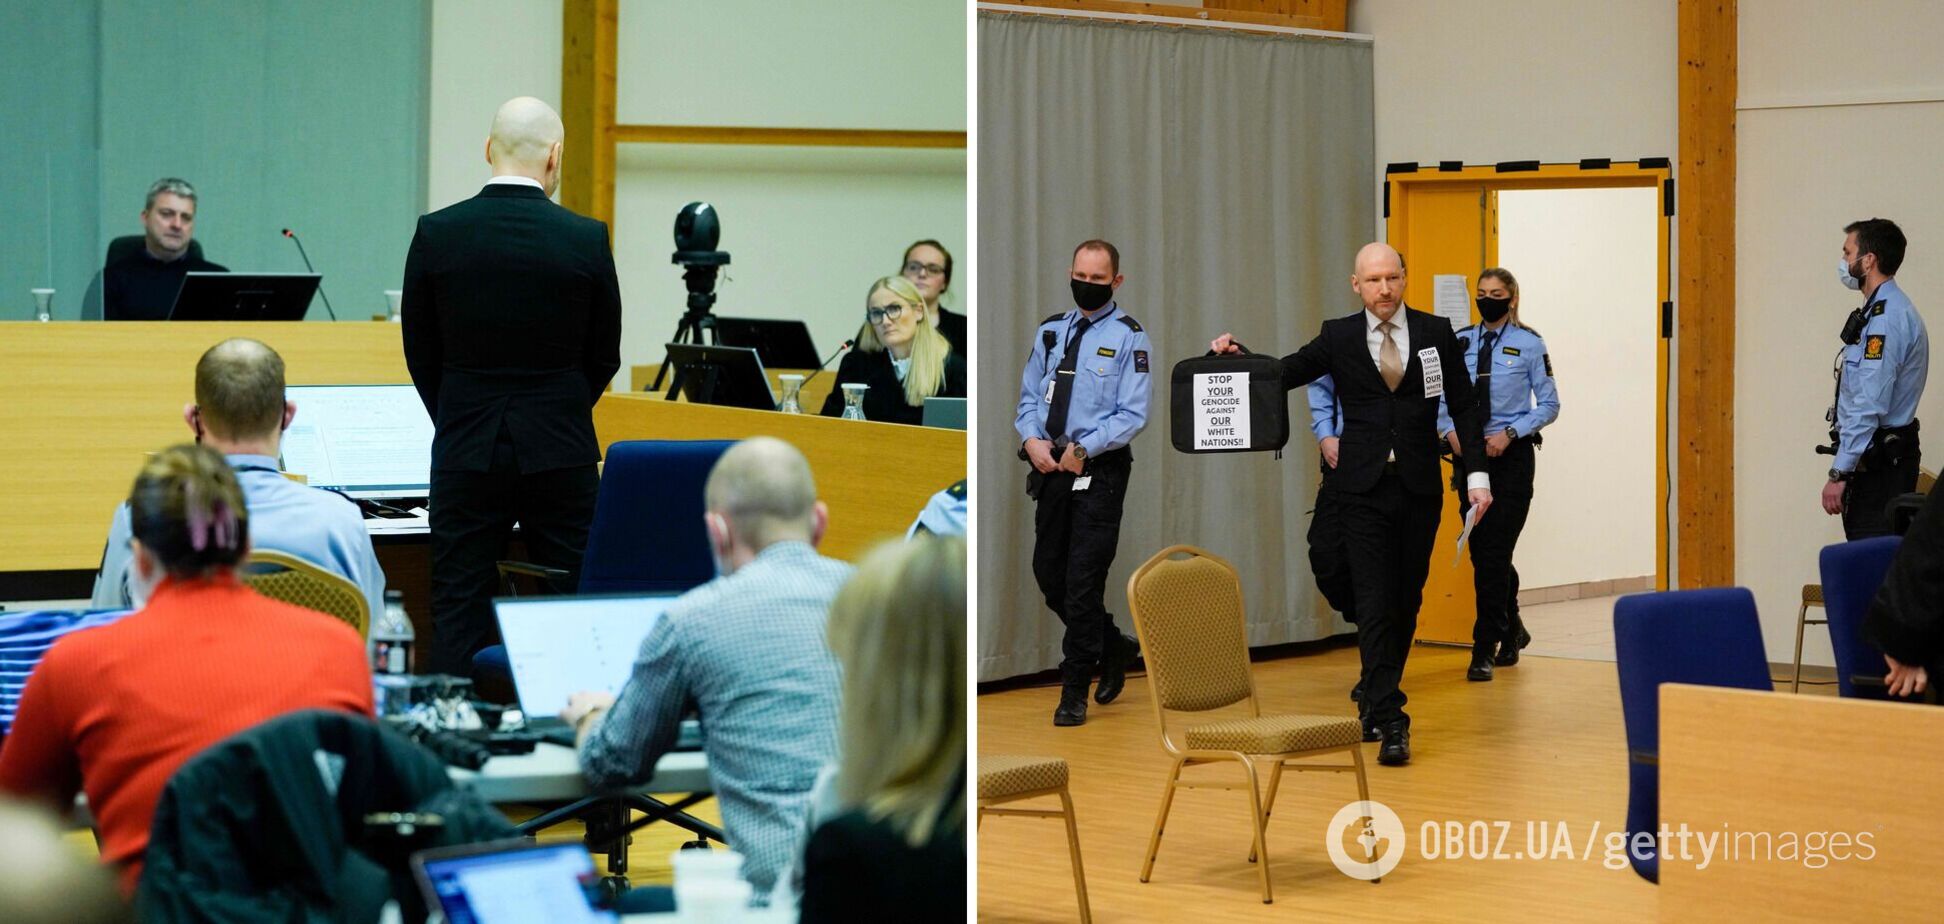 Террорист Брейвик, убивший 77 человек, возложил вину на неонацистов: суд рассматривает возможность досрочного освобождения. Фото и видео